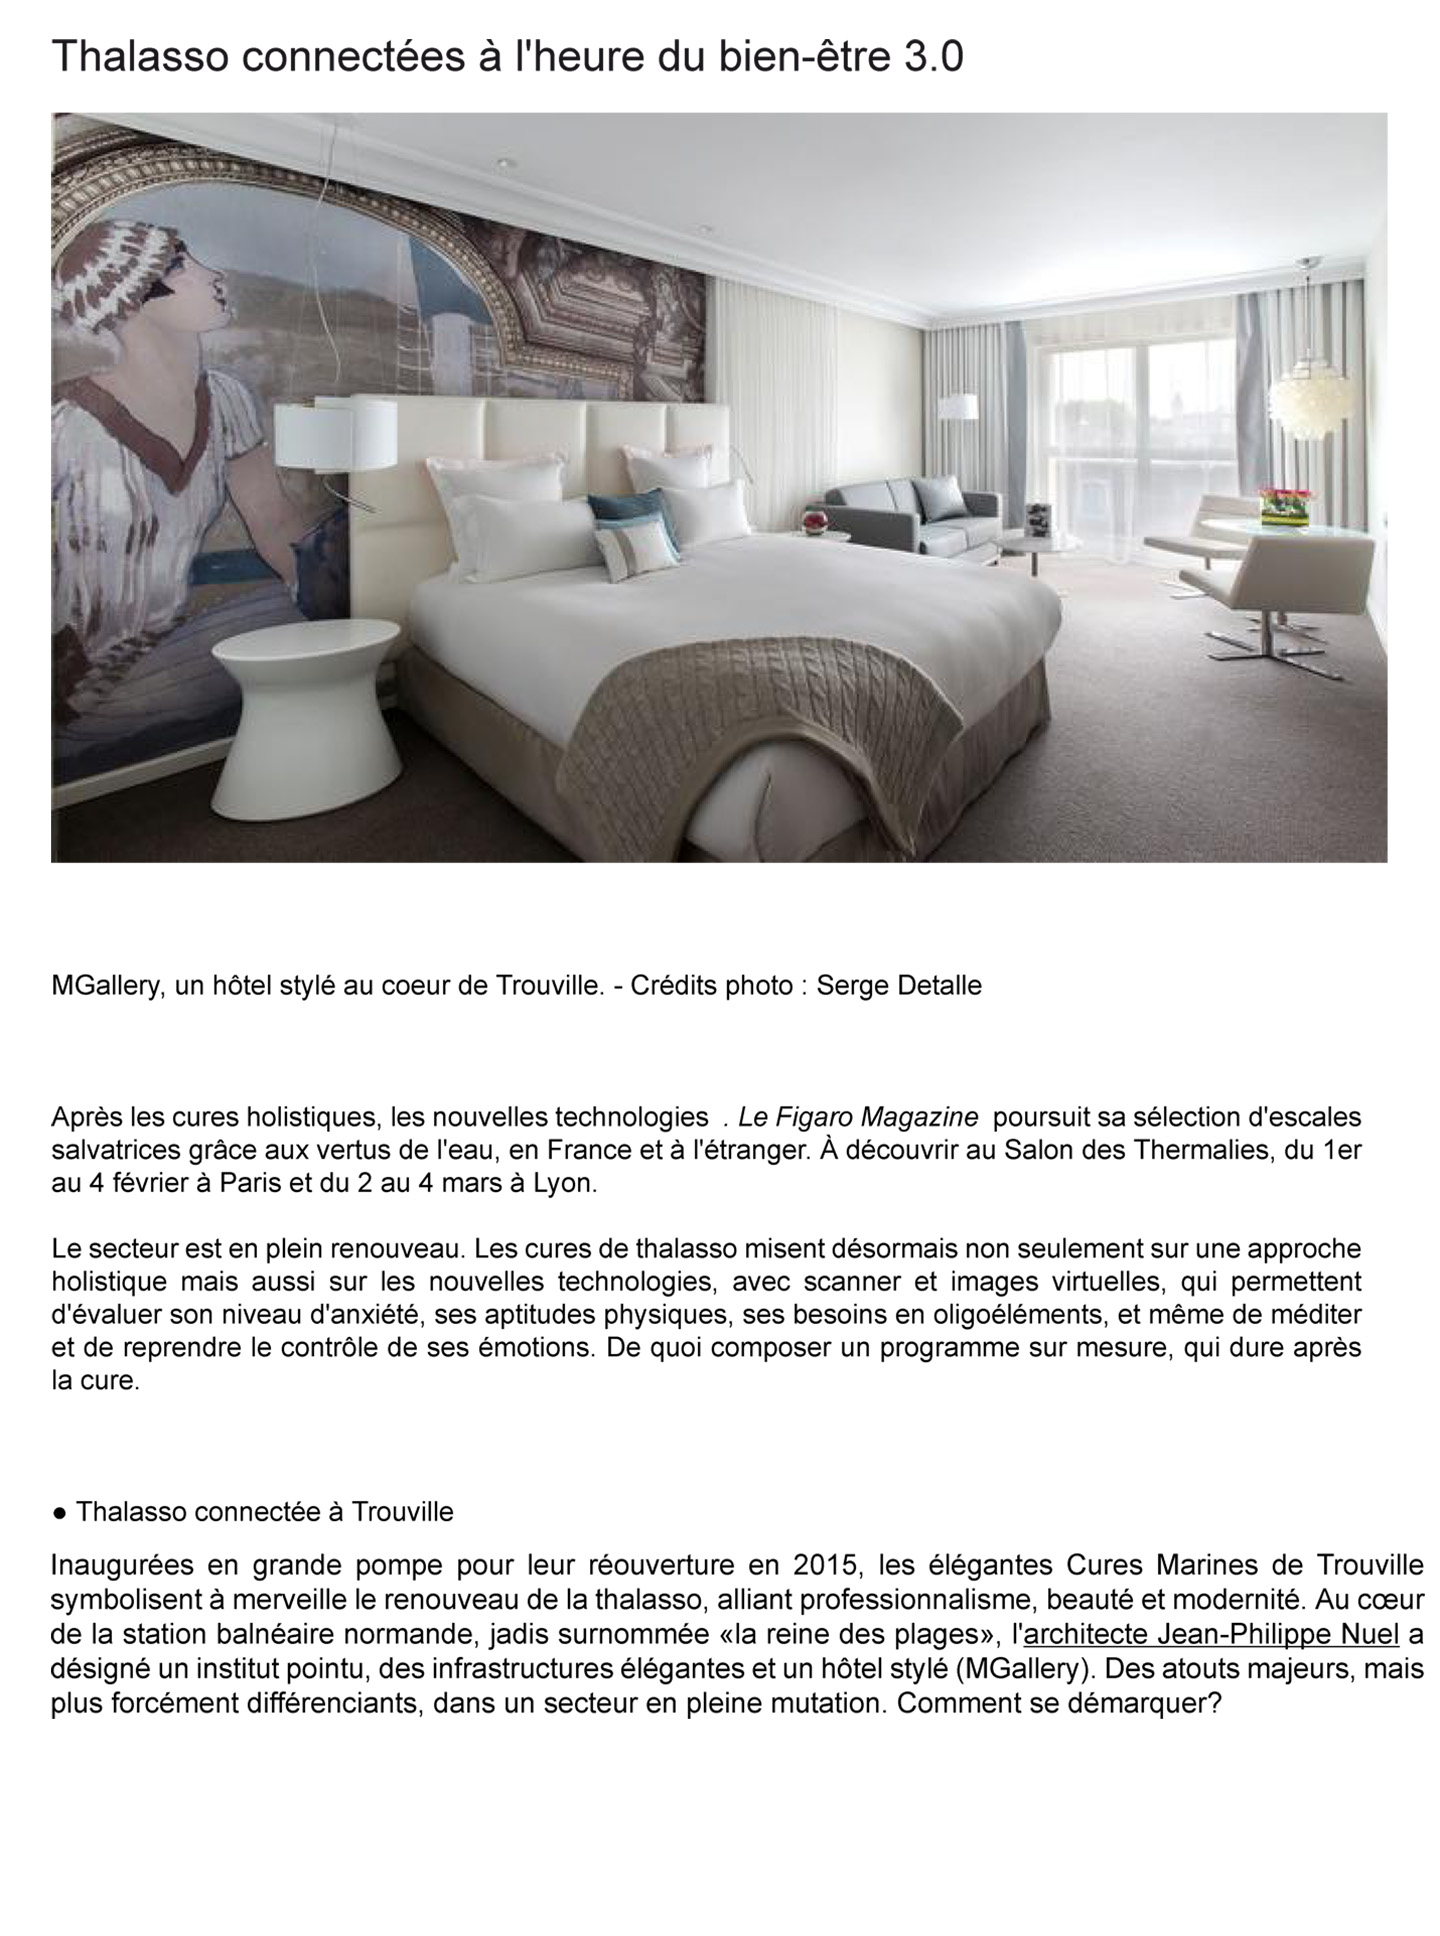 Article sur les cures marines de Trouville réalisées par le studio jean-Philippe Nuel dans le magazine Le Figaro, nouvel hotel spa thalasso de luxe, architecture d'intérieur de luxe